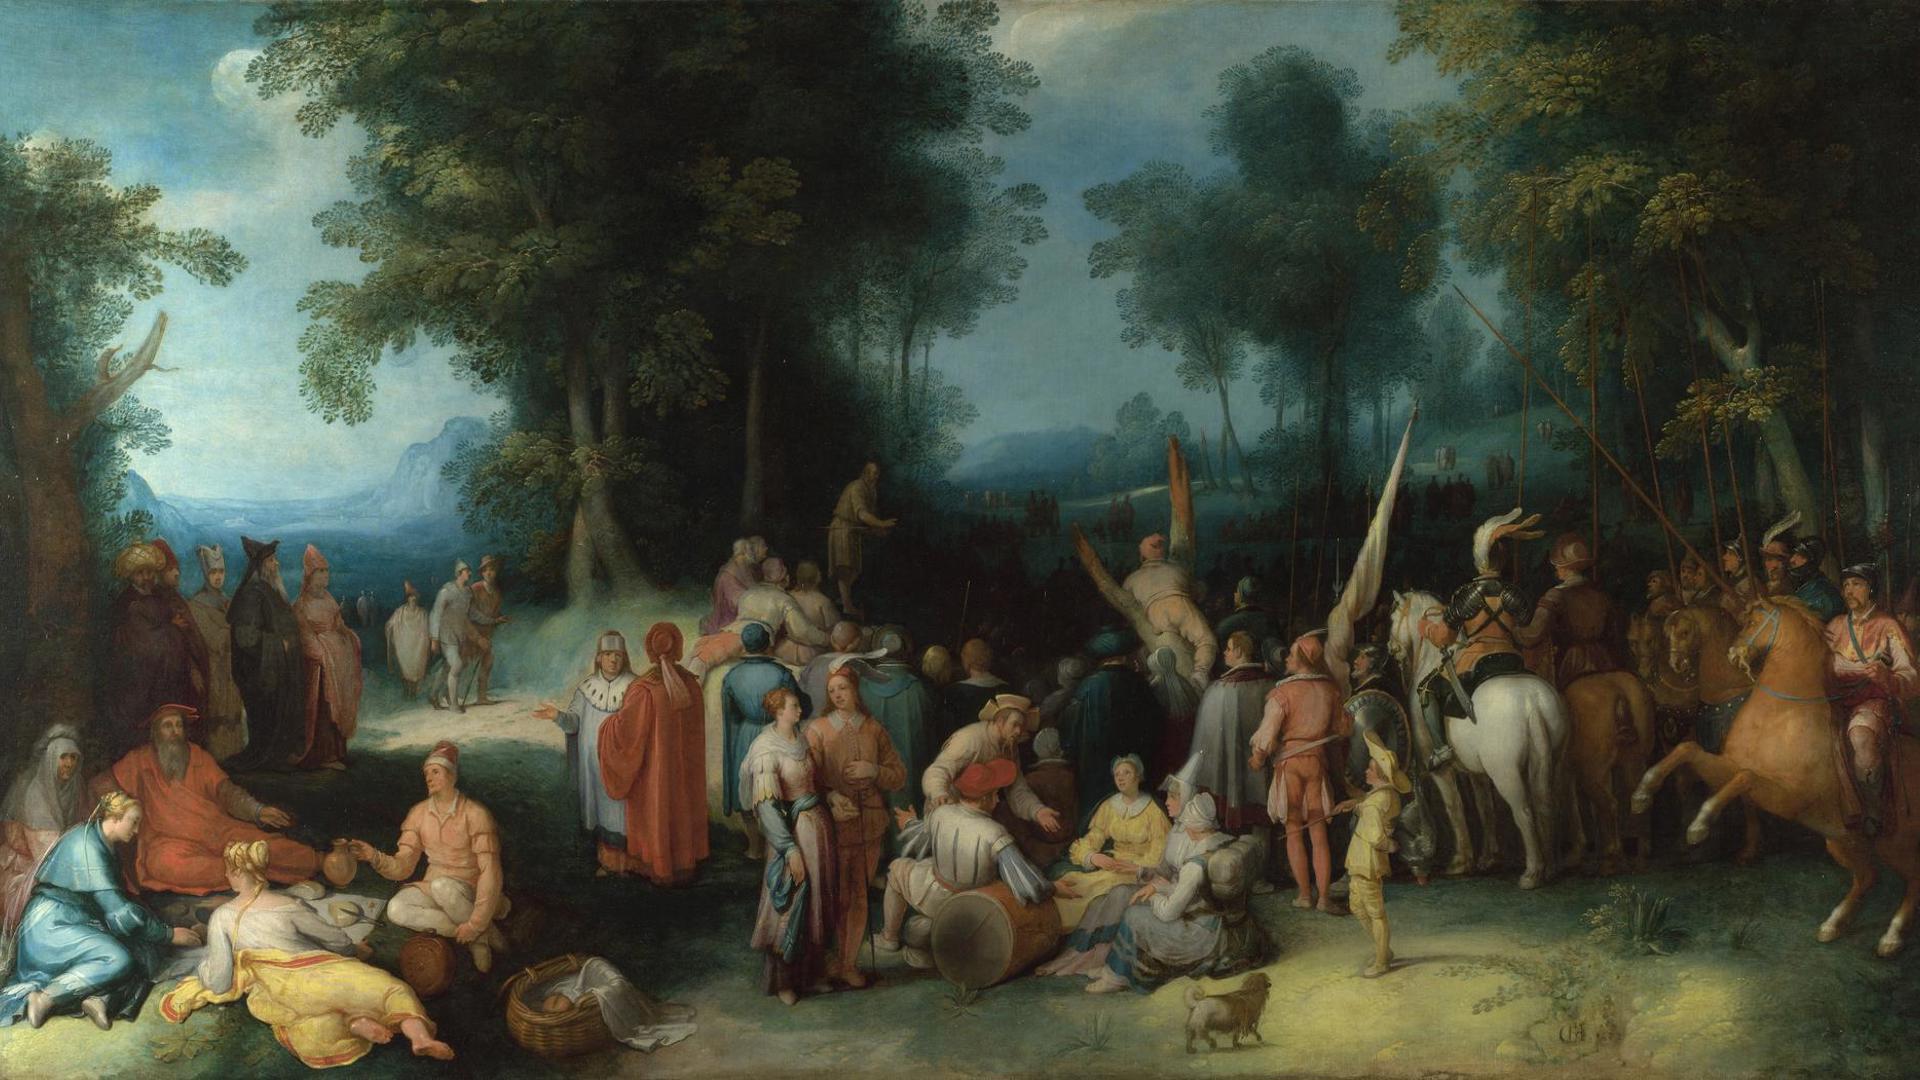 The Preaching of Saint John the Baptist by Cornelis van Haarlem